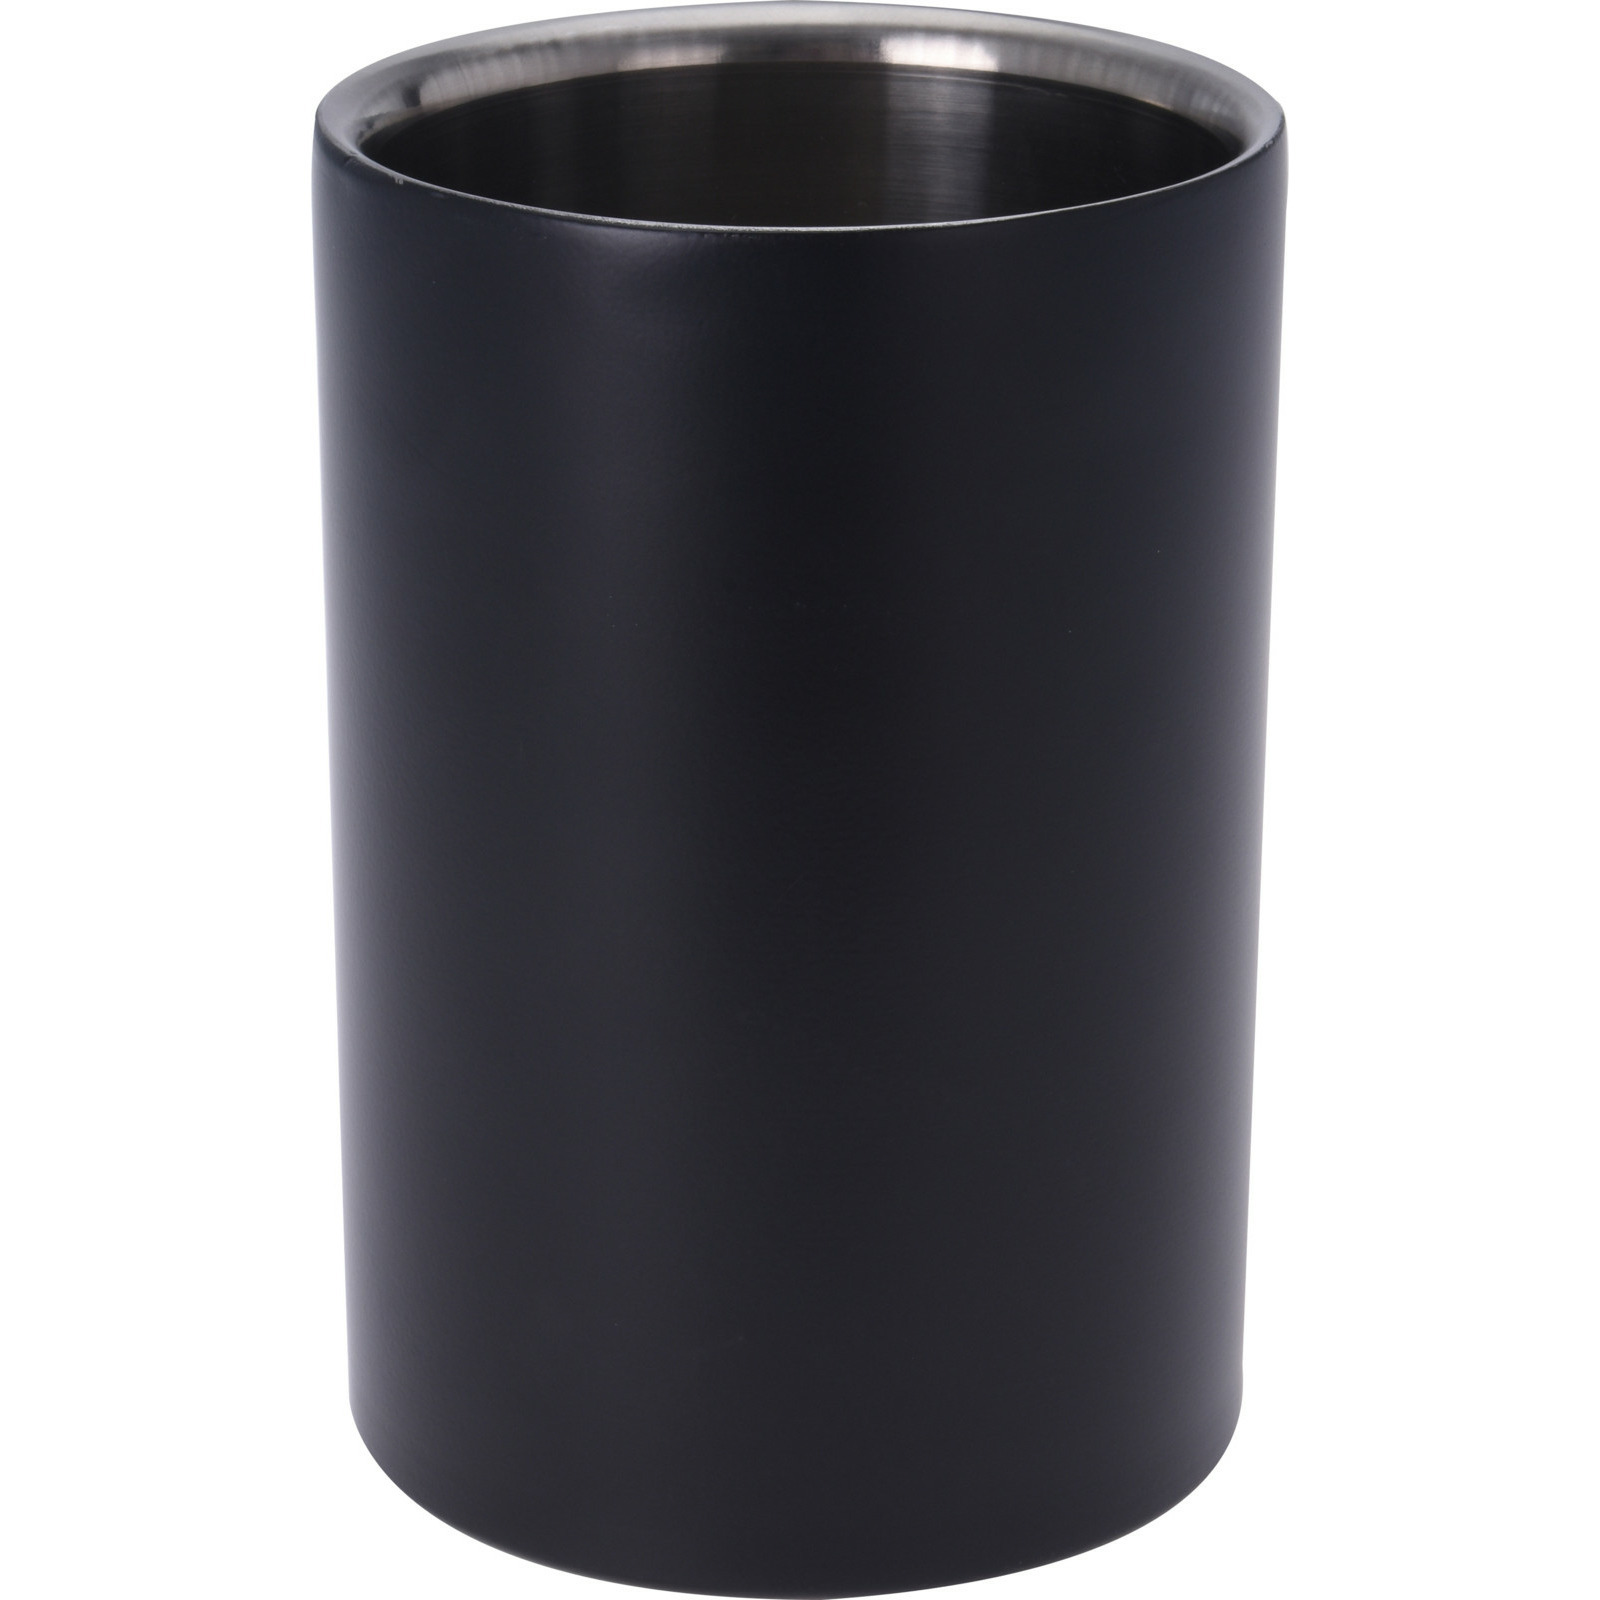 Wijnfles koeler-wijnkoeler zwart RVS D12 x H18 cm